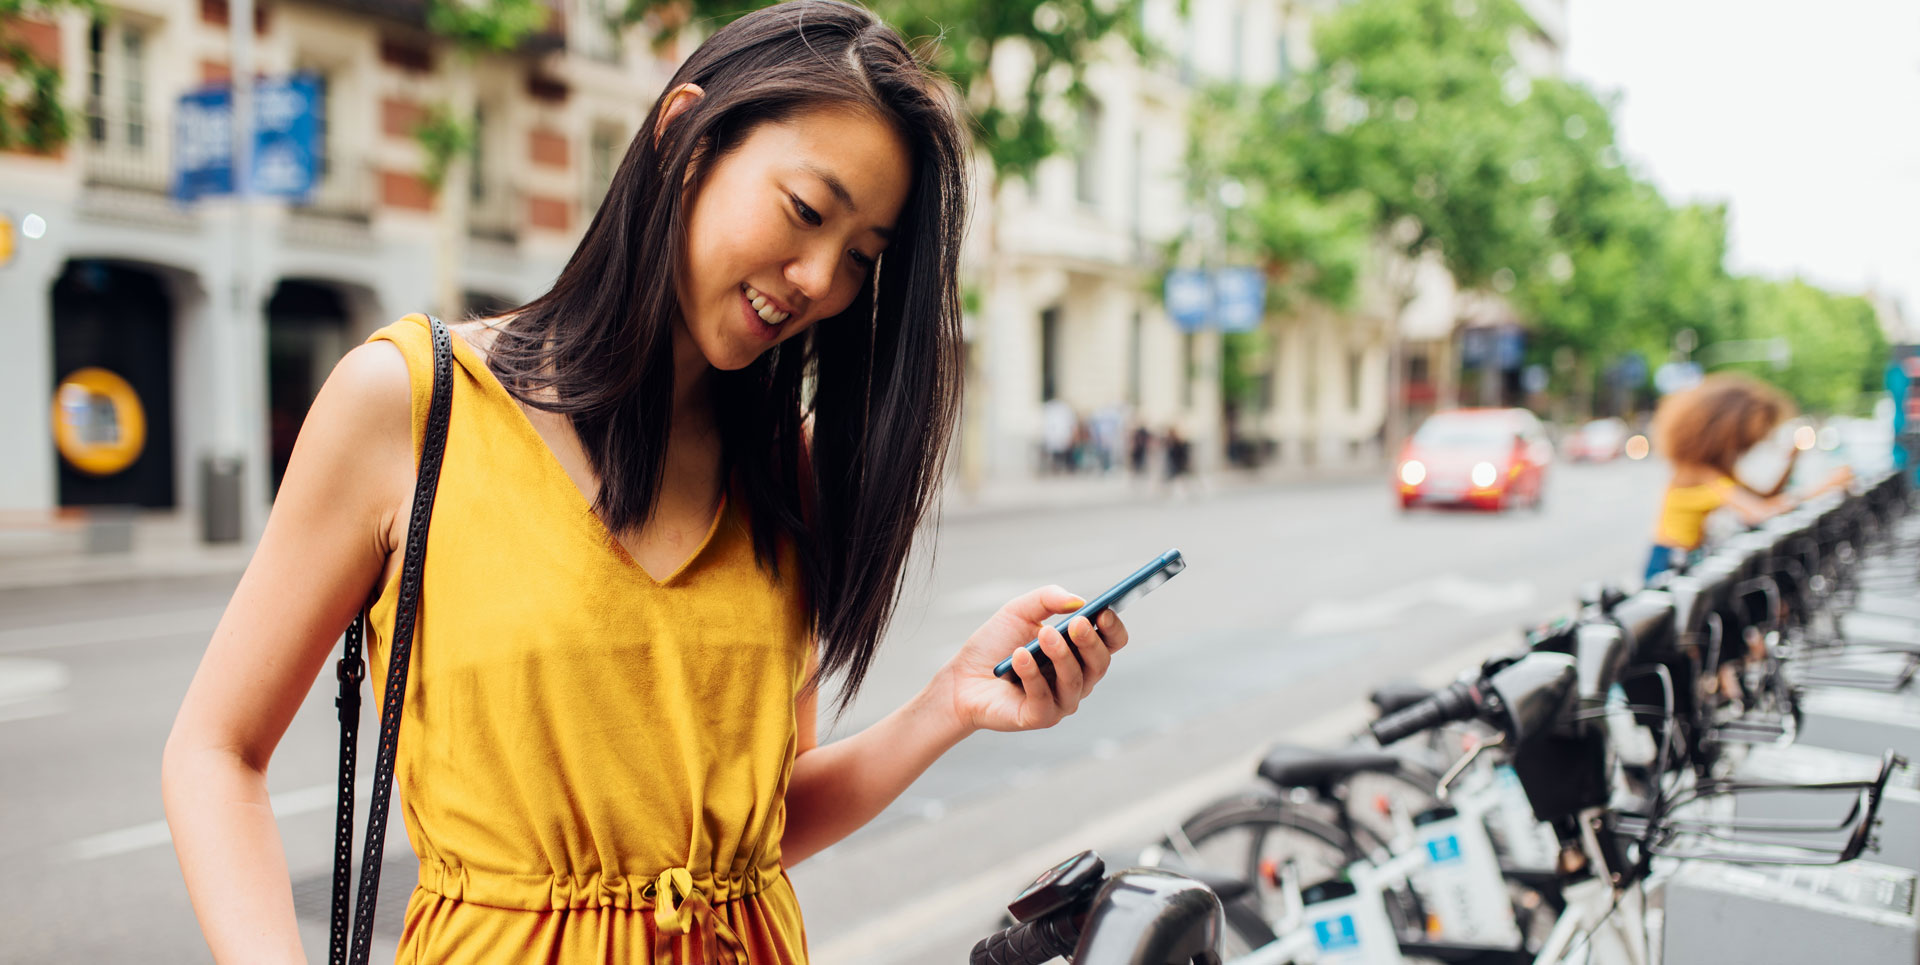 Eine lächelnde junge Frau hält ein Handy und steht vor einer Reihe von Rädern eines Bike-Sharing-Anbieters.